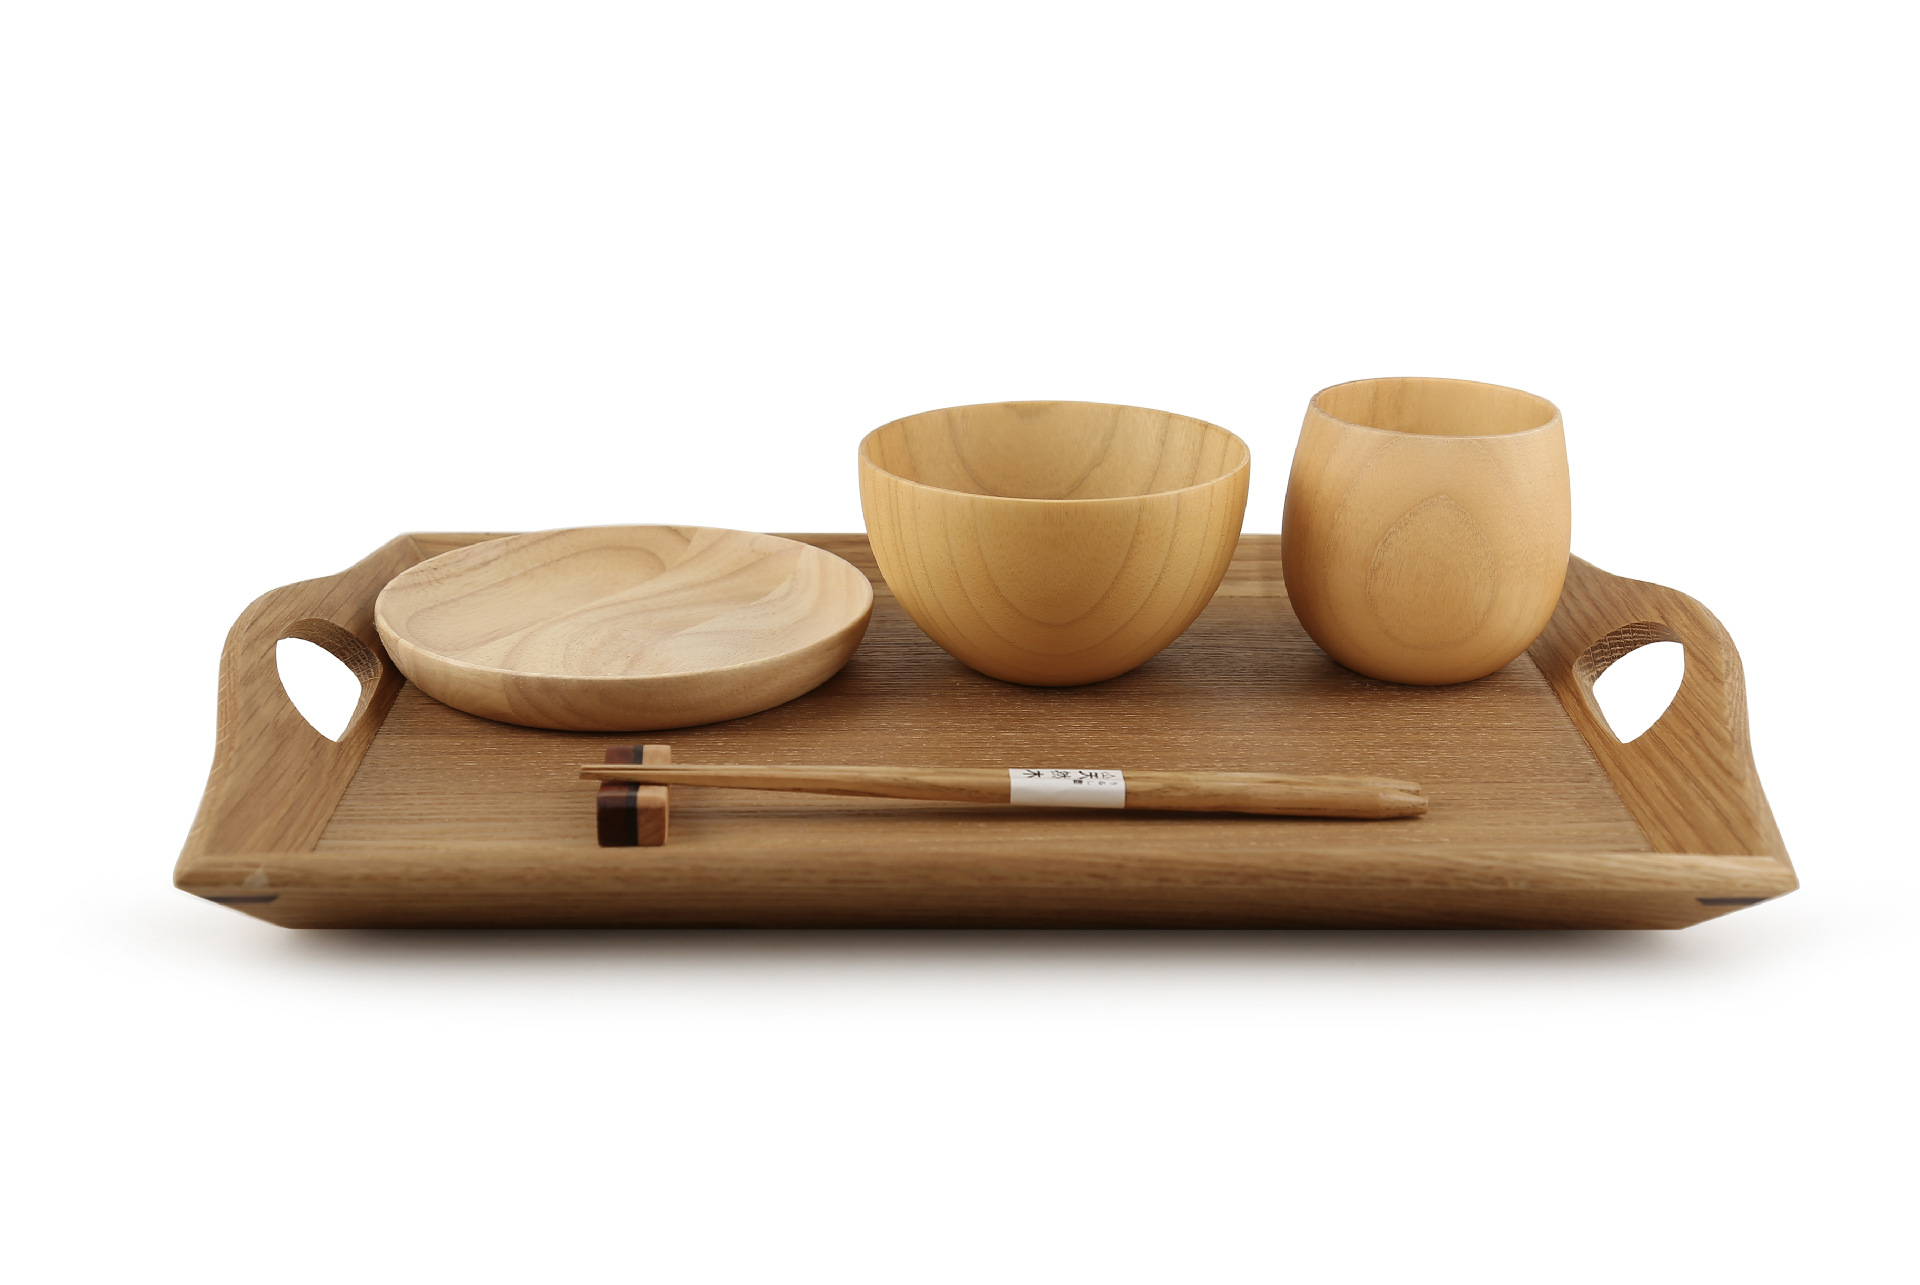 创意日式实木方形盘子 相思木水果蛋糕盘子 原木木质托盘餐盘-阿里巴巴